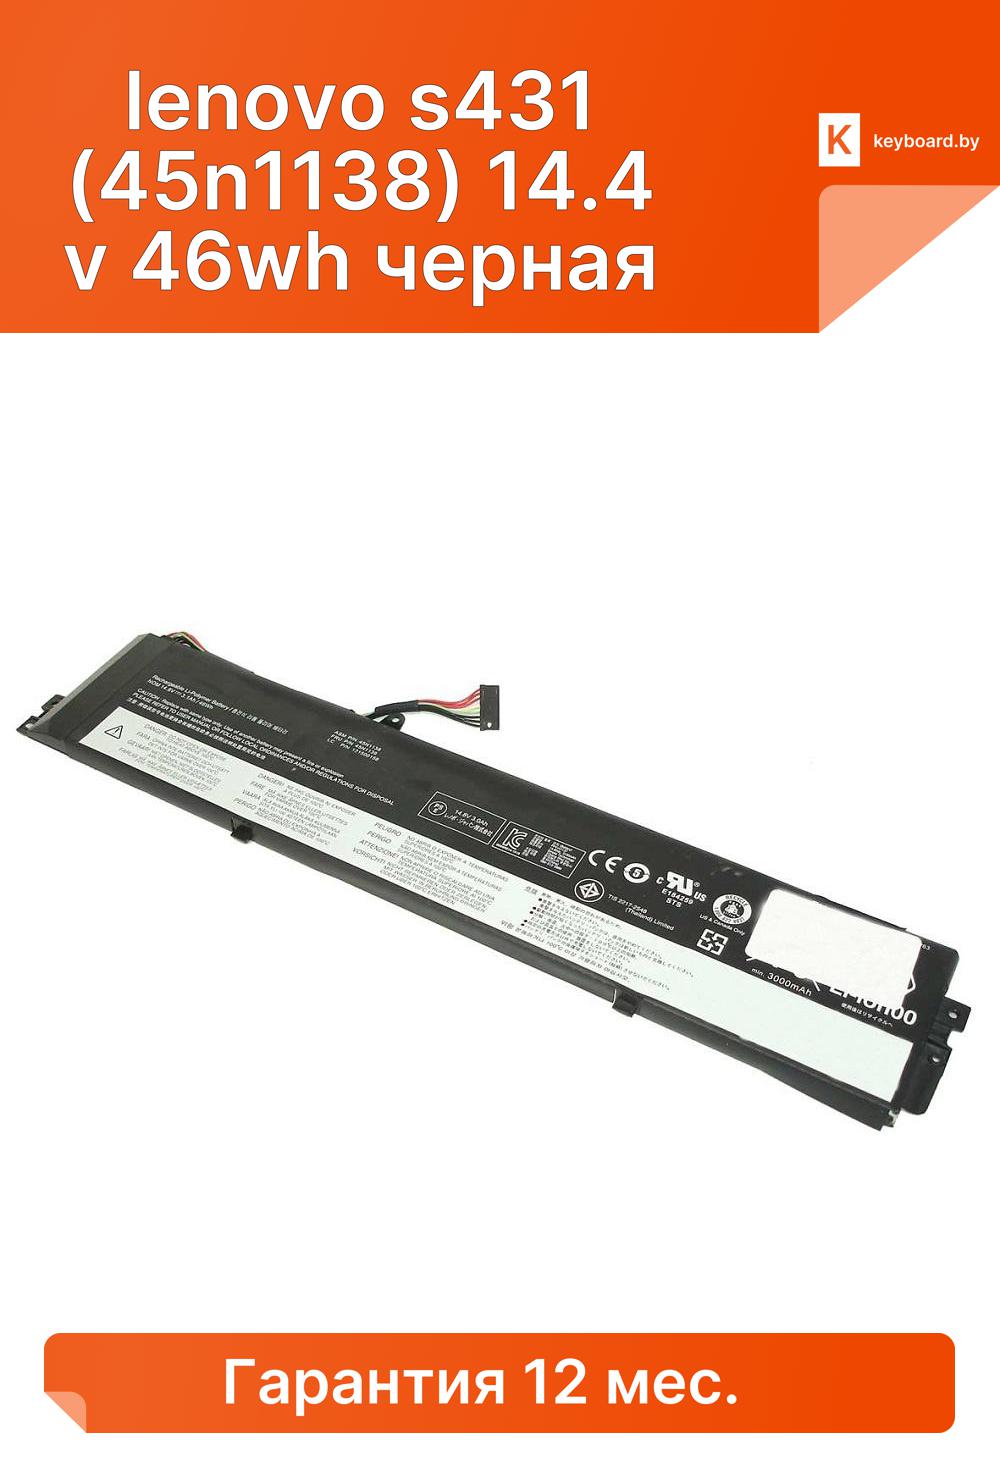 Аккумуляторная батарея для ноутбука lenovo s431 (45n1138) 14.4 v 46wh черная